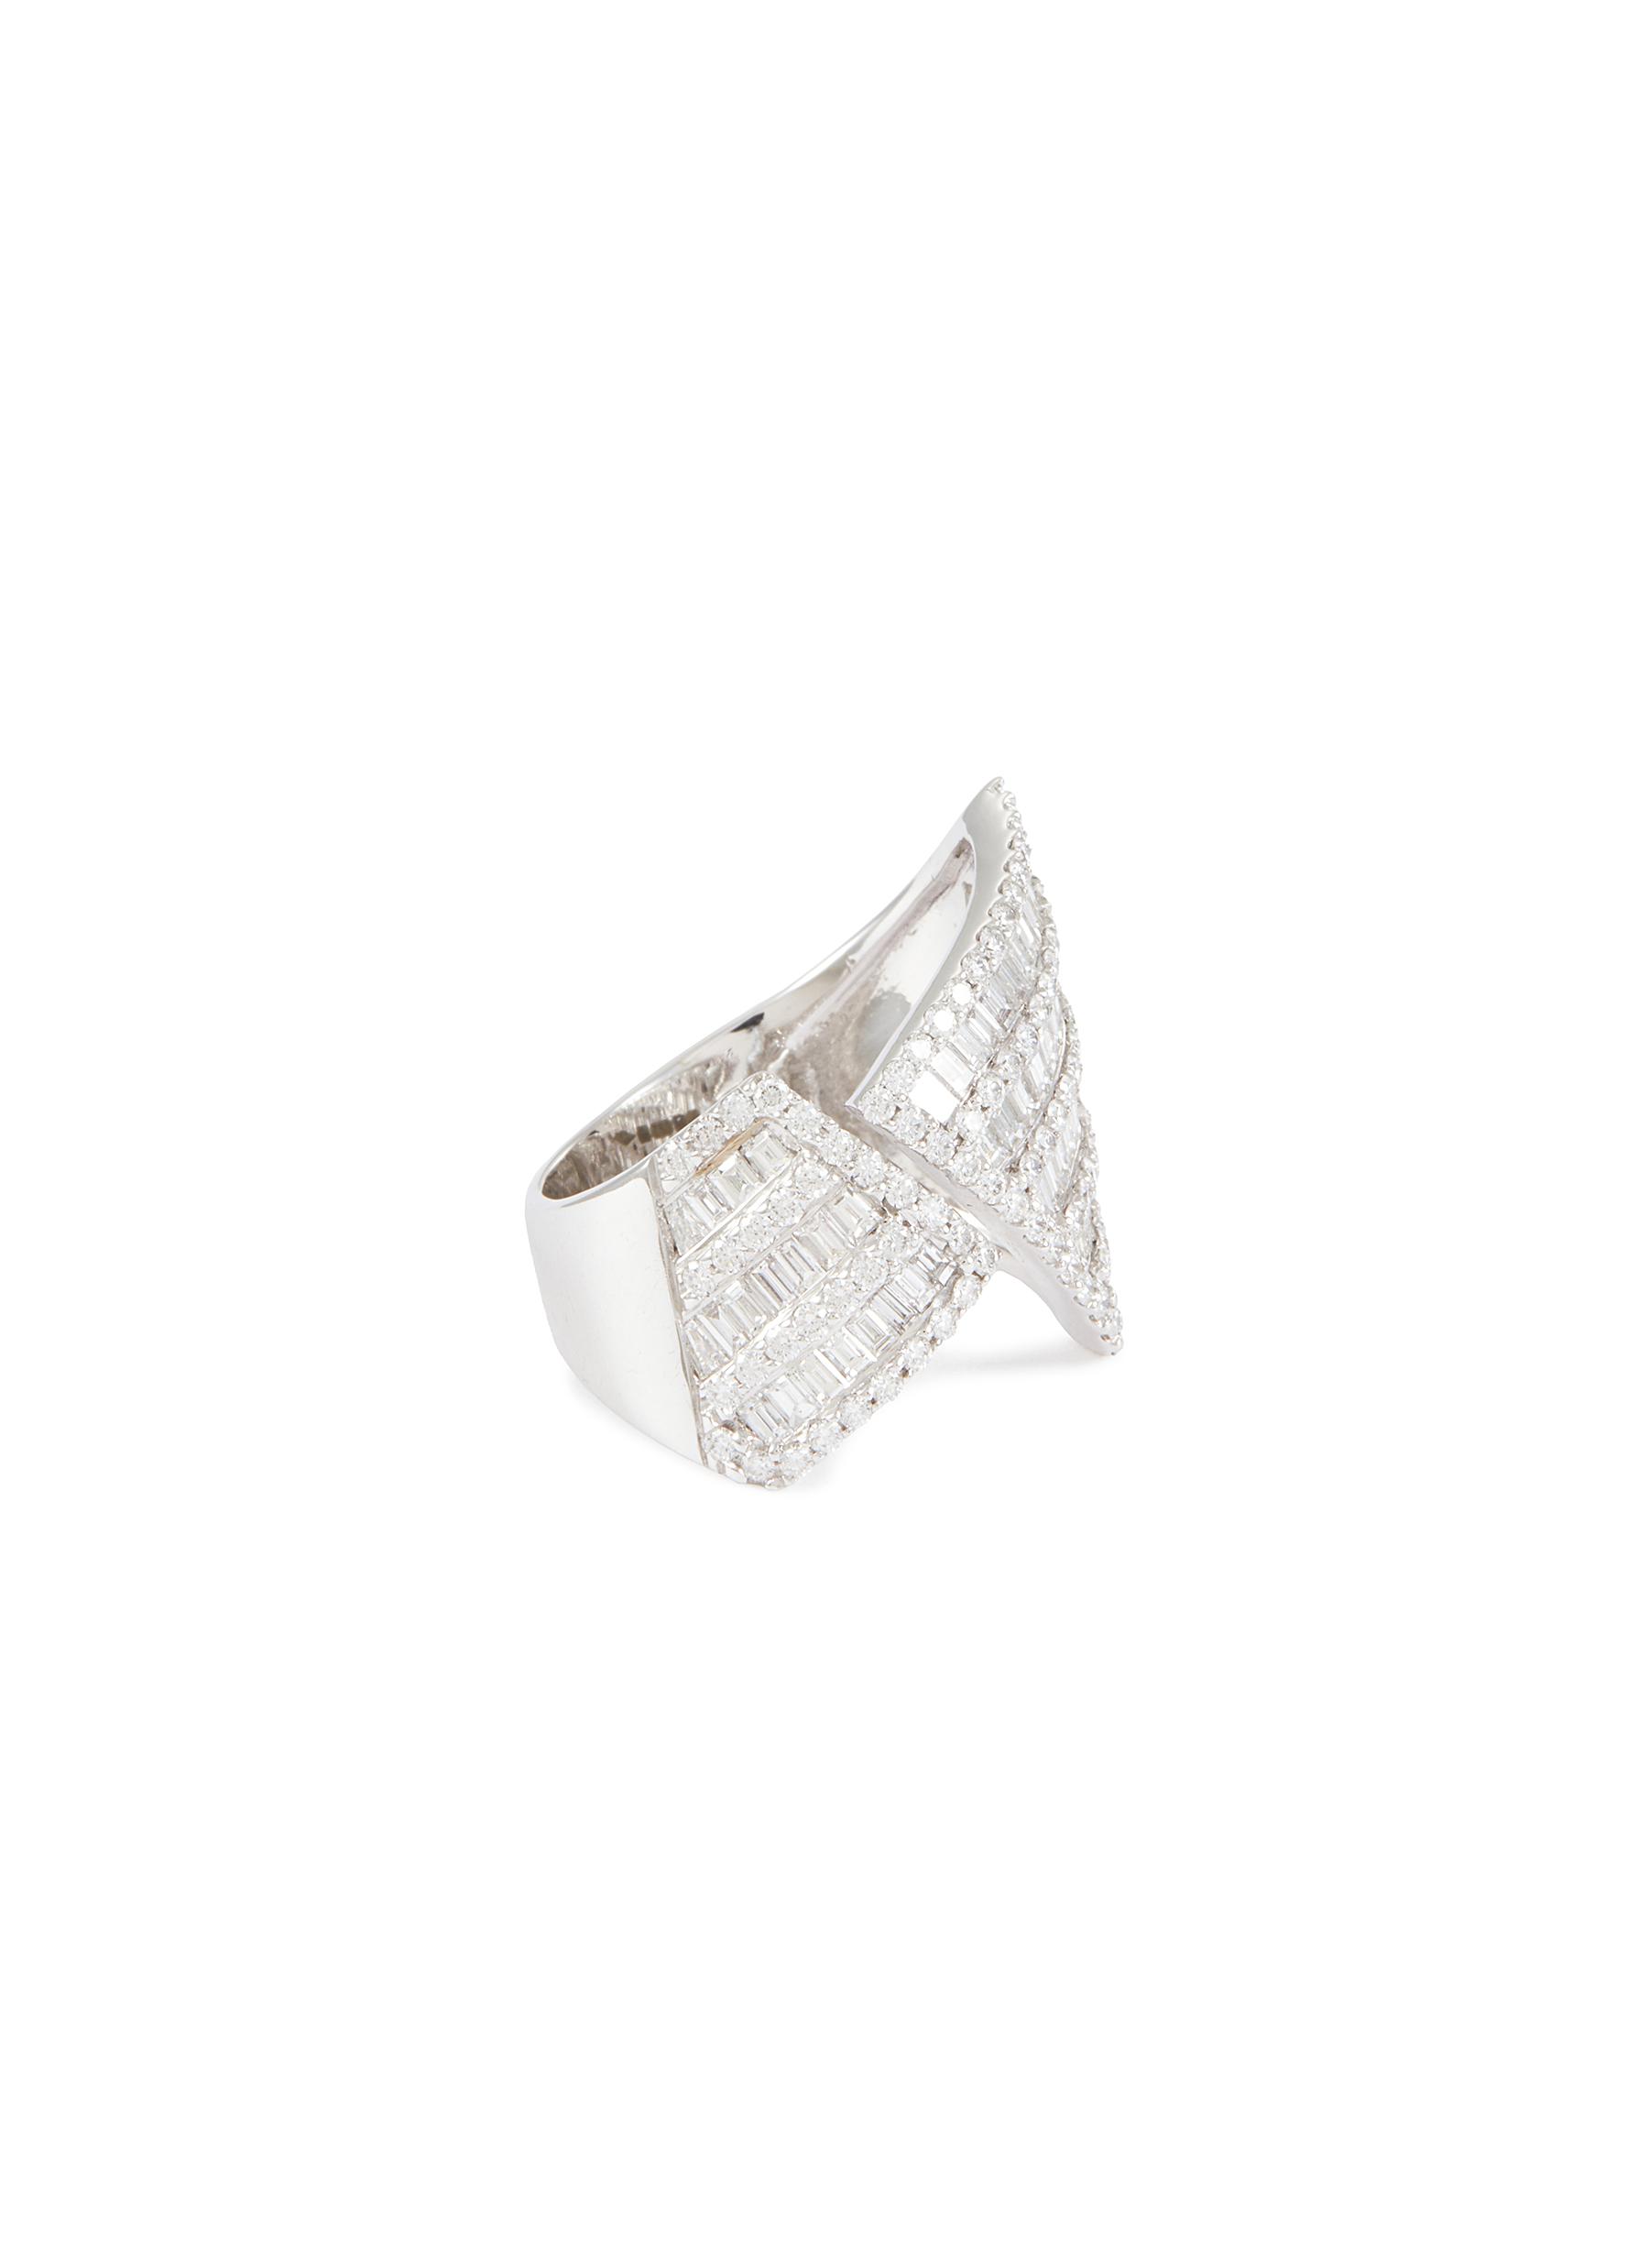 ‘Origami' Diamond 18K White Gold Asymmetry Ring